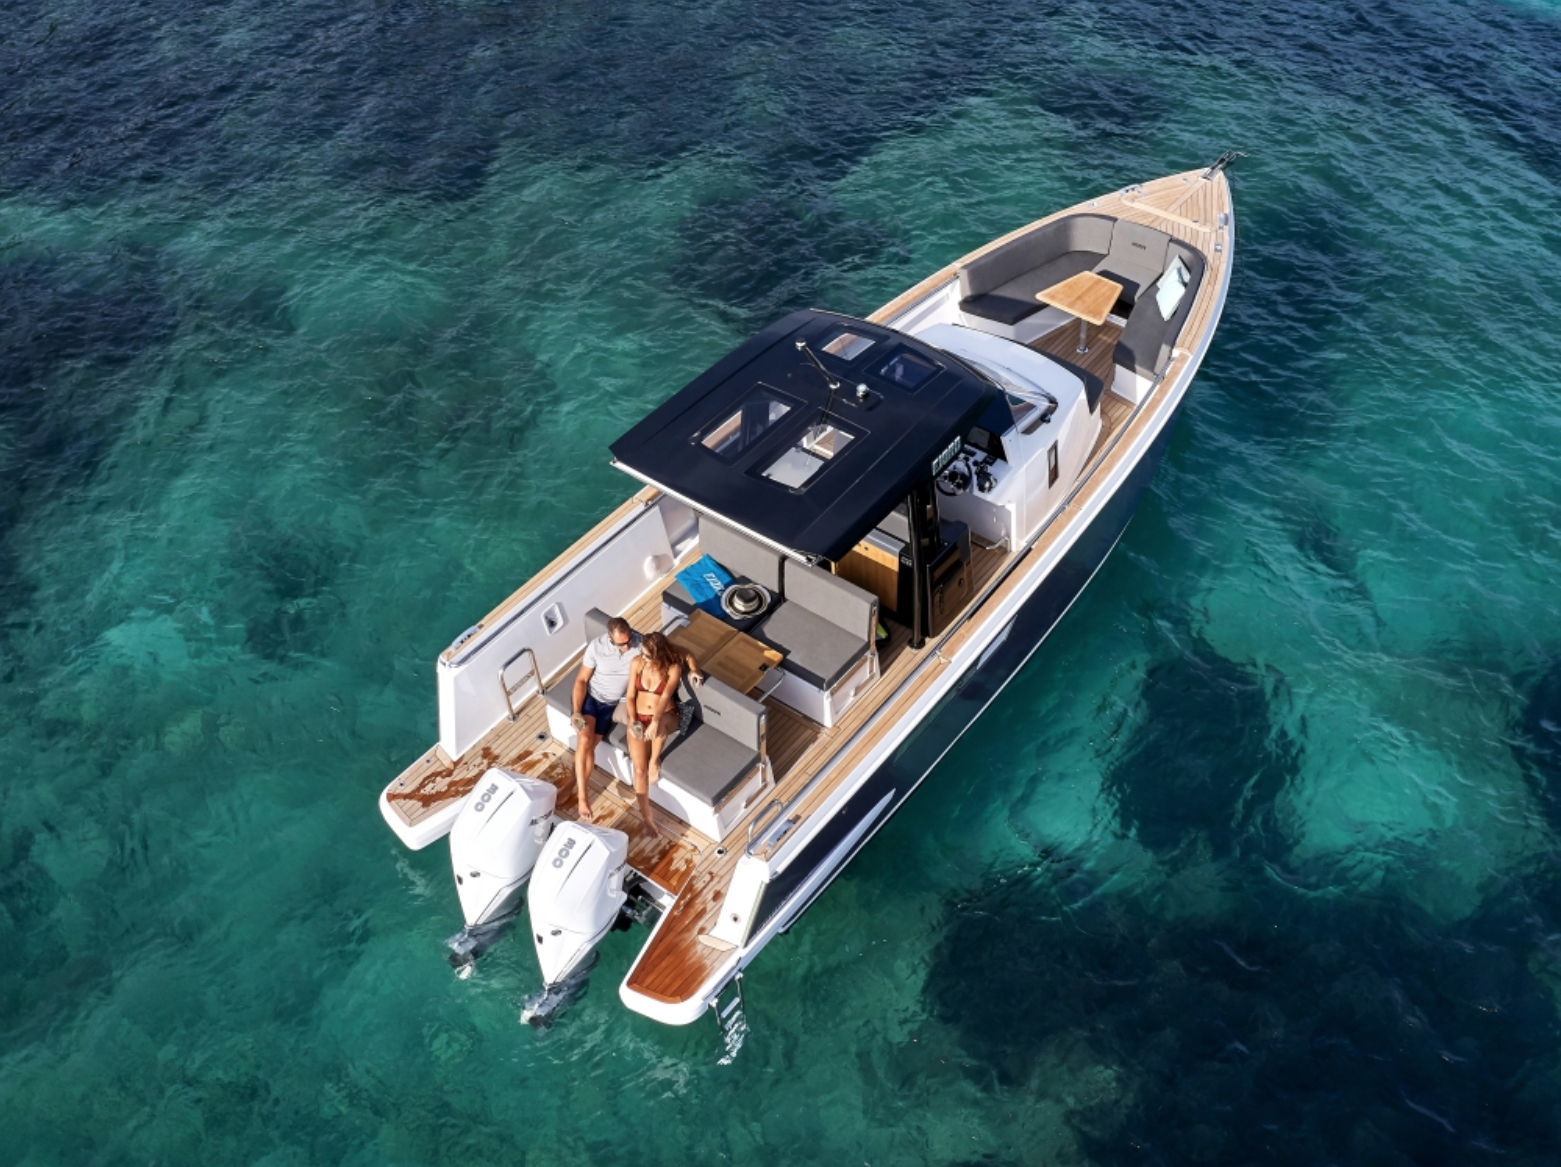 Fjord 38 Express - Motor Boat Charter worldwide & Boat hire in Greece Cyclades Islands Mykonos Mykonos 1